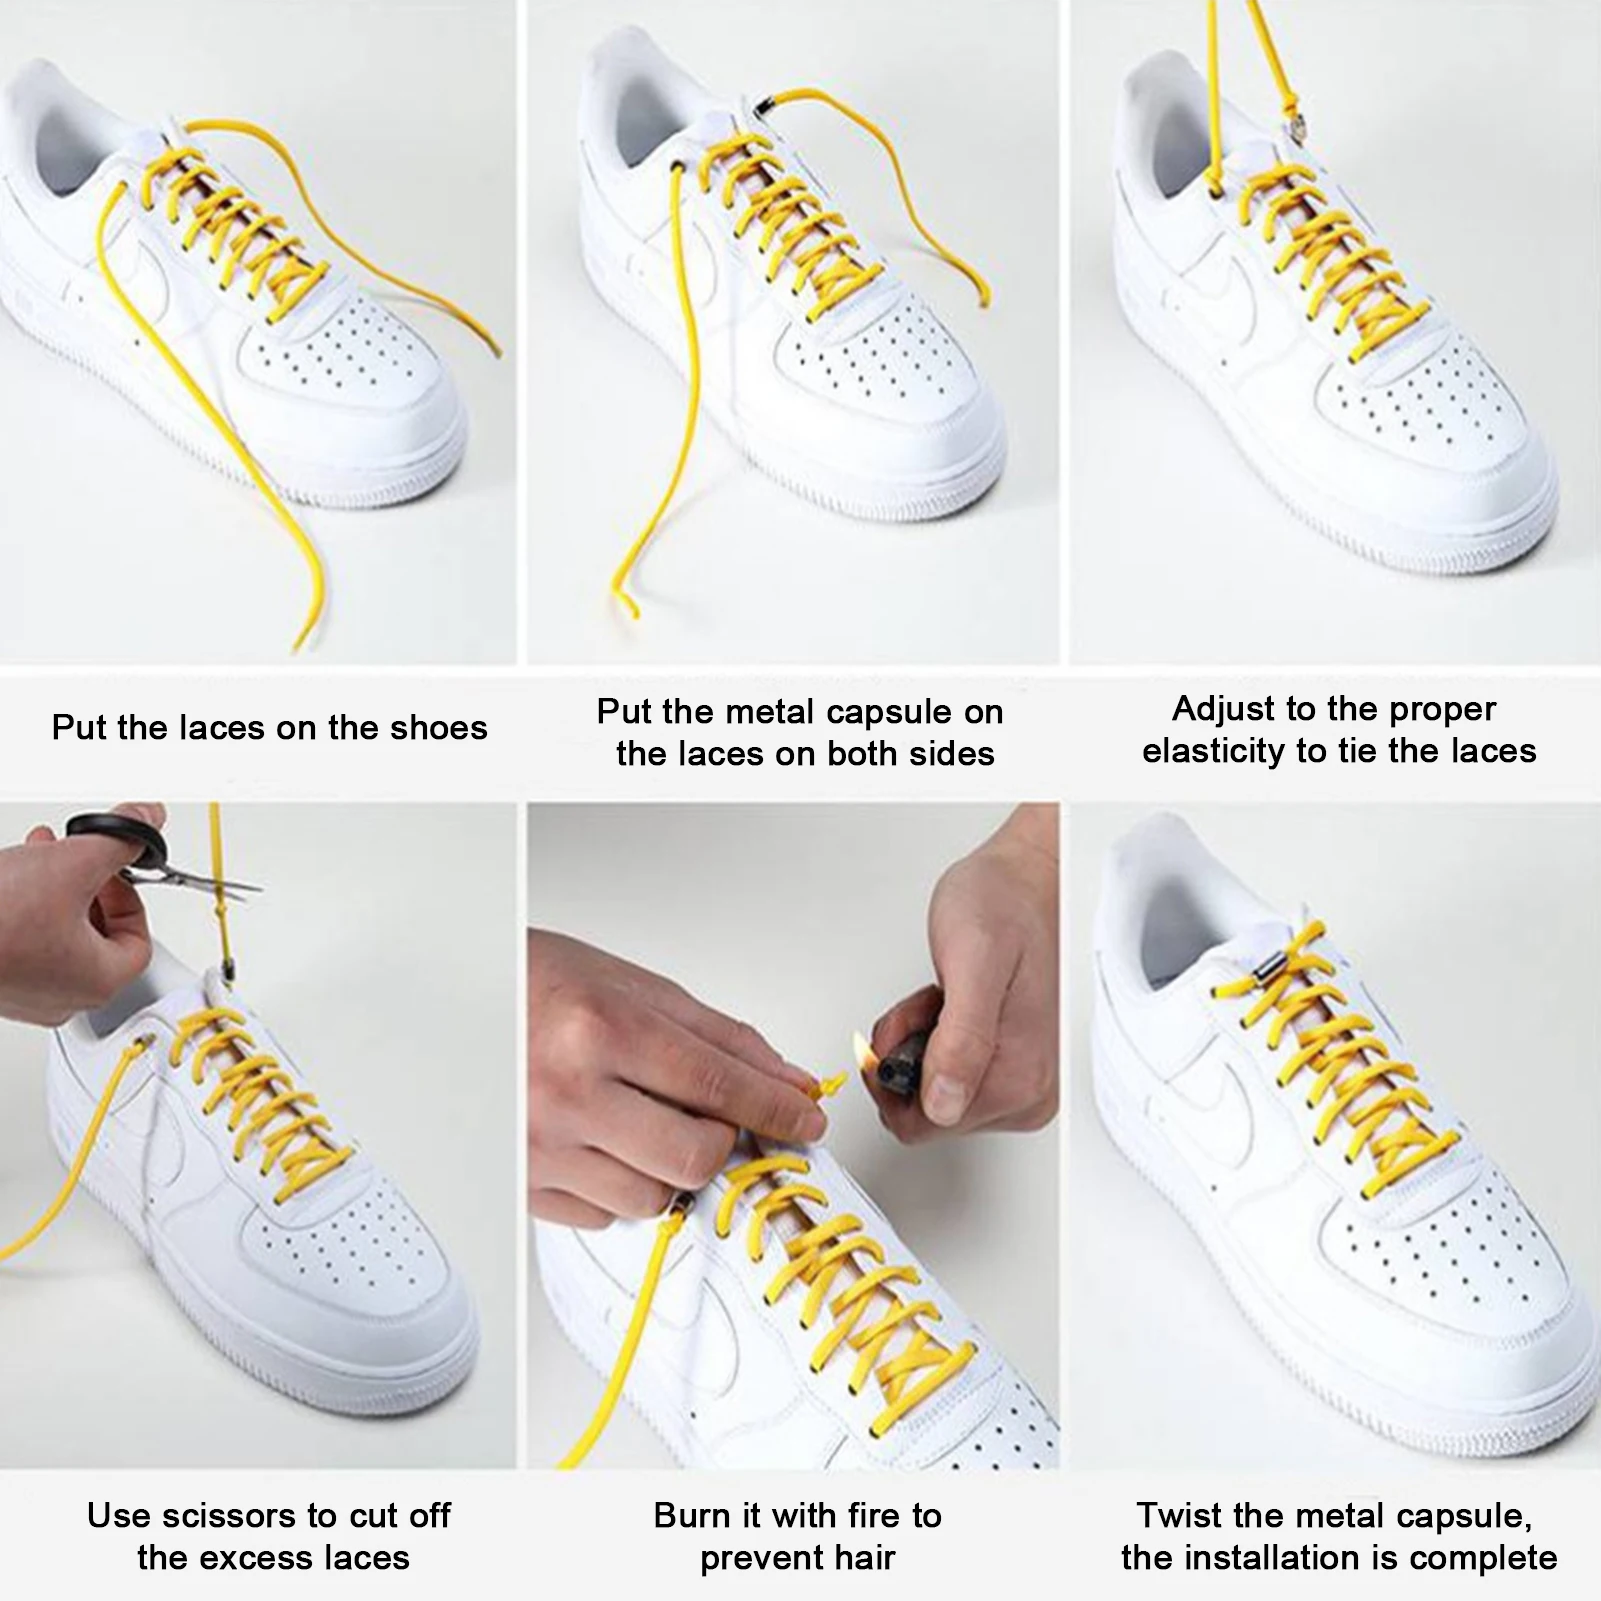 เชือกผูกรองเท้าล็อคหัวเข็มขัดโลหะอุปกรณ์ล็อคเชือกผูกรองเท้าไม่ผูกเชือกรองเท้าเหล็กชุดรองเท้าผ้าใบ